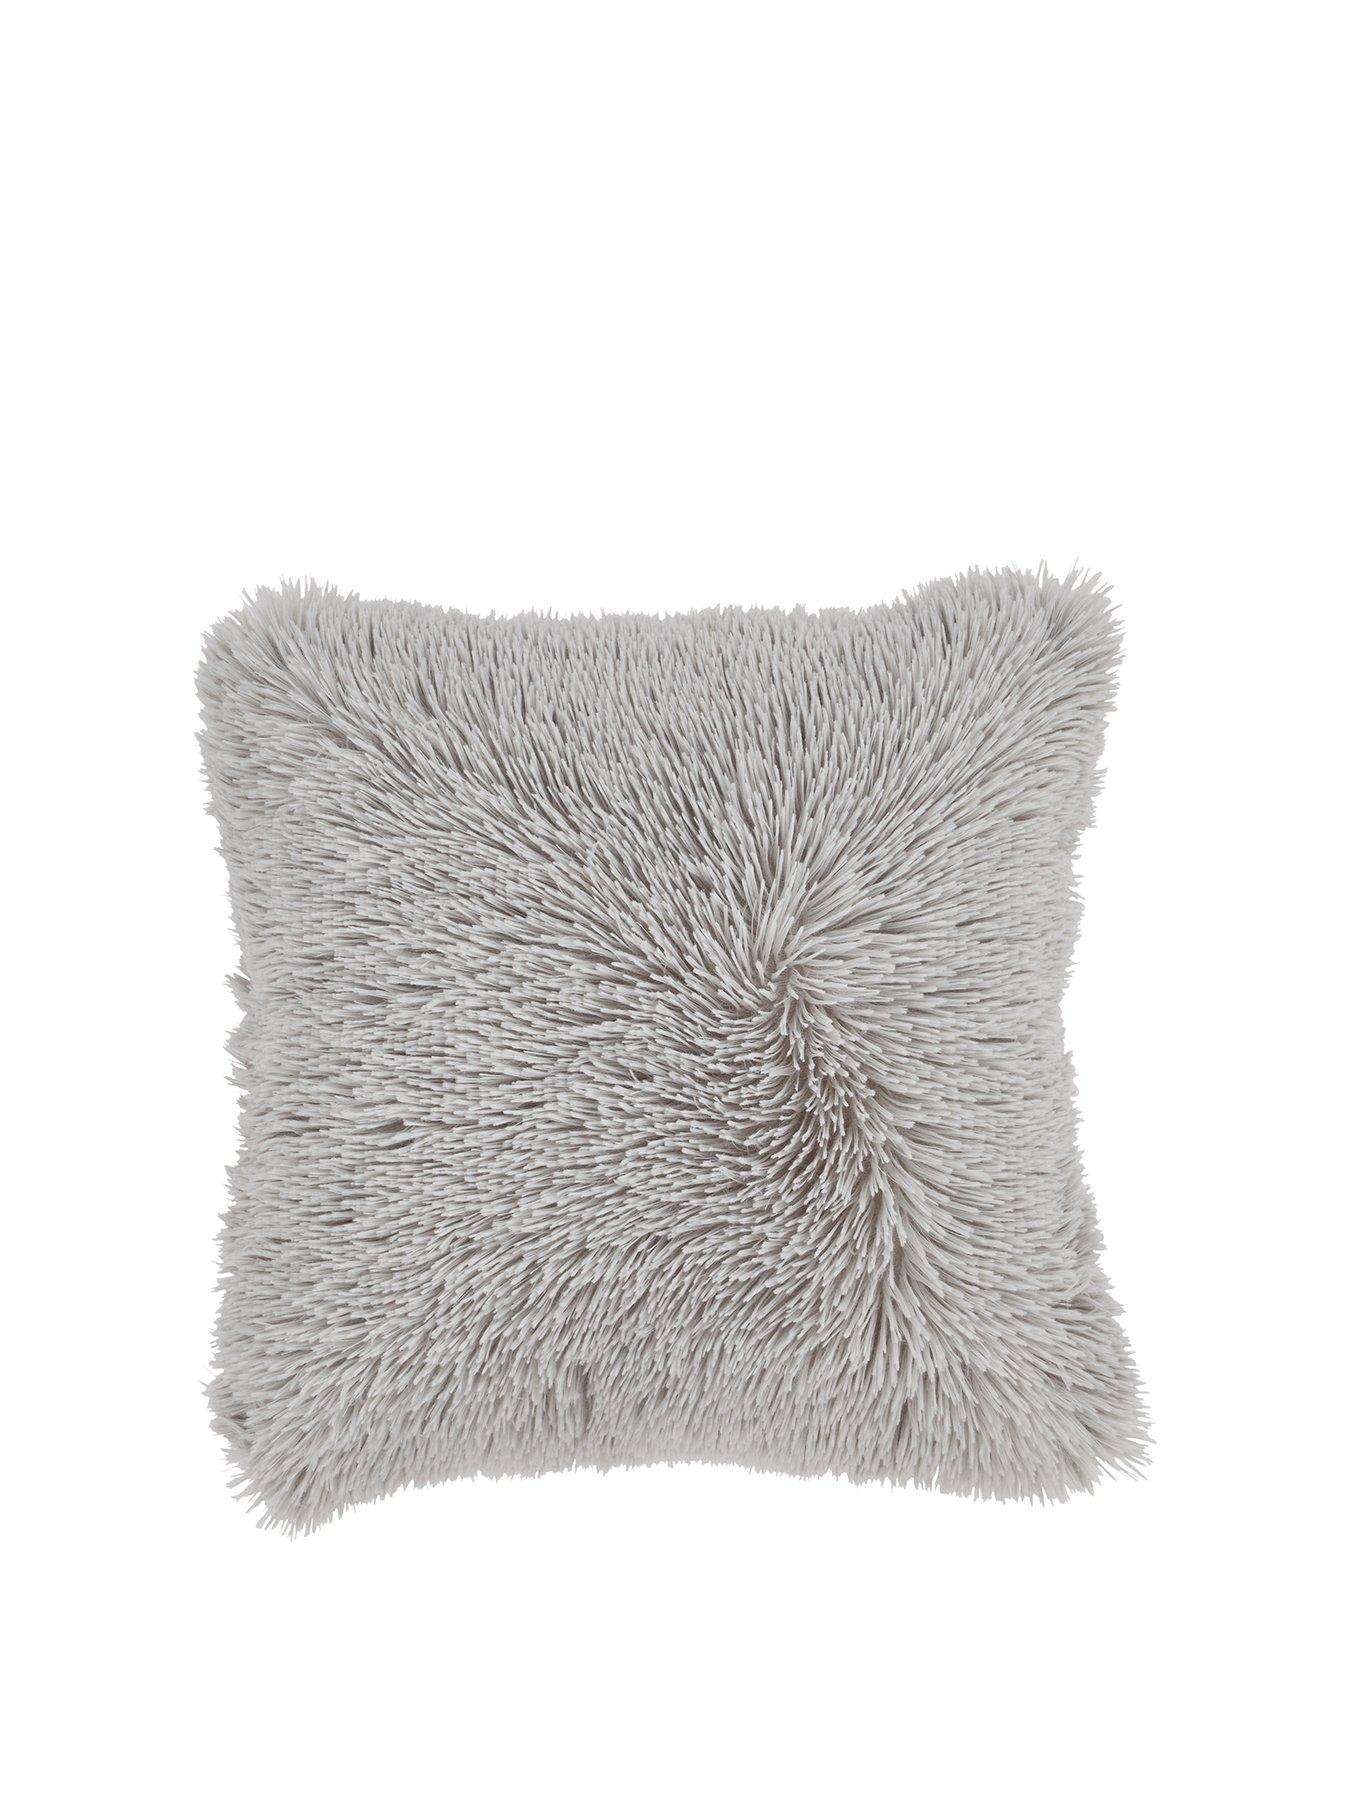 43x43cm Cushion Cover 4 x Long Pile Super Soft & Cuddly Shaggy Faux Fur Silver 